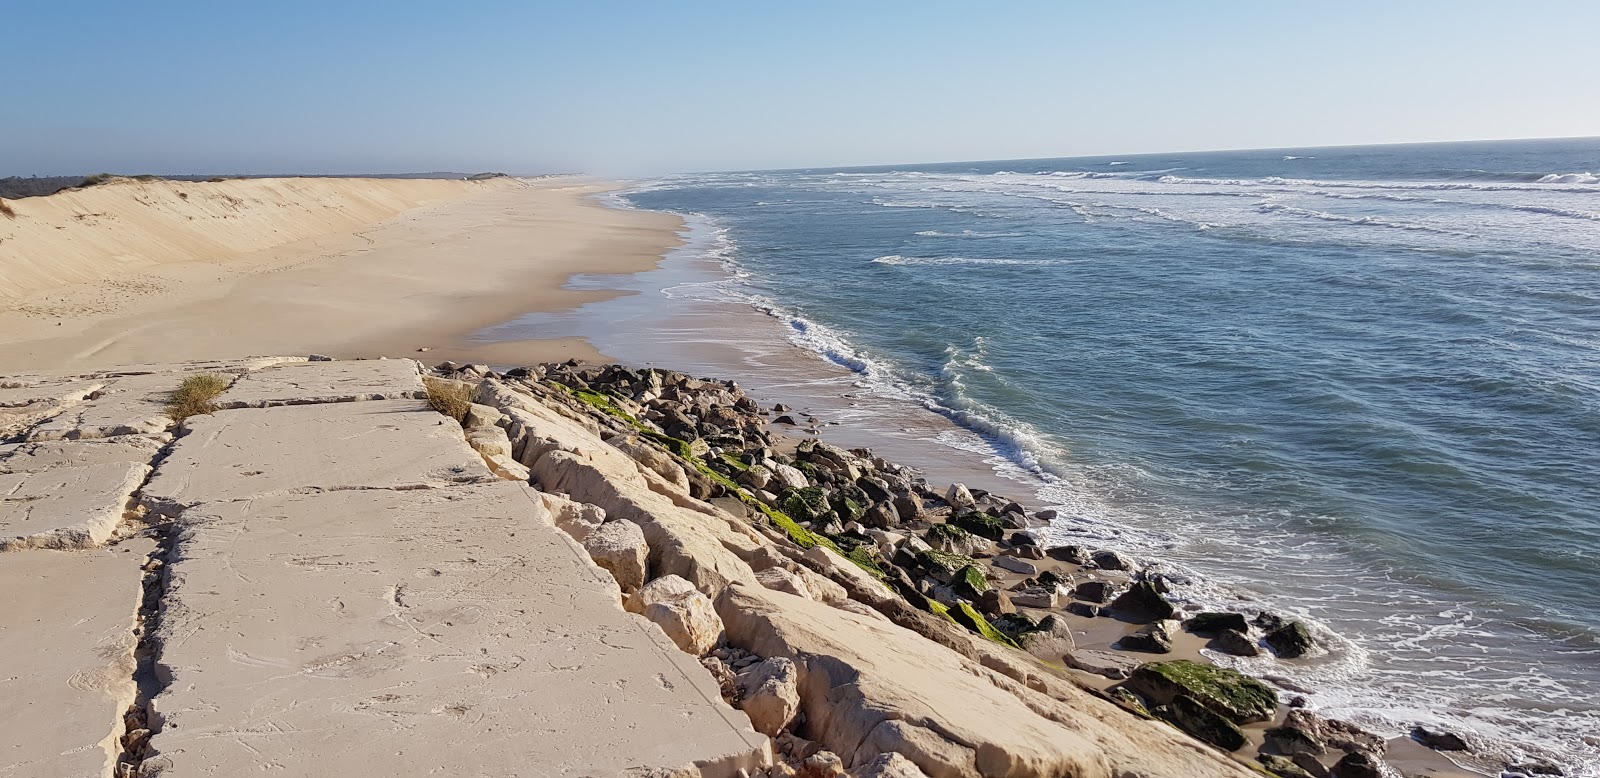 Foto af Praia da Leirosa - populært sted blandt afslapningskendere